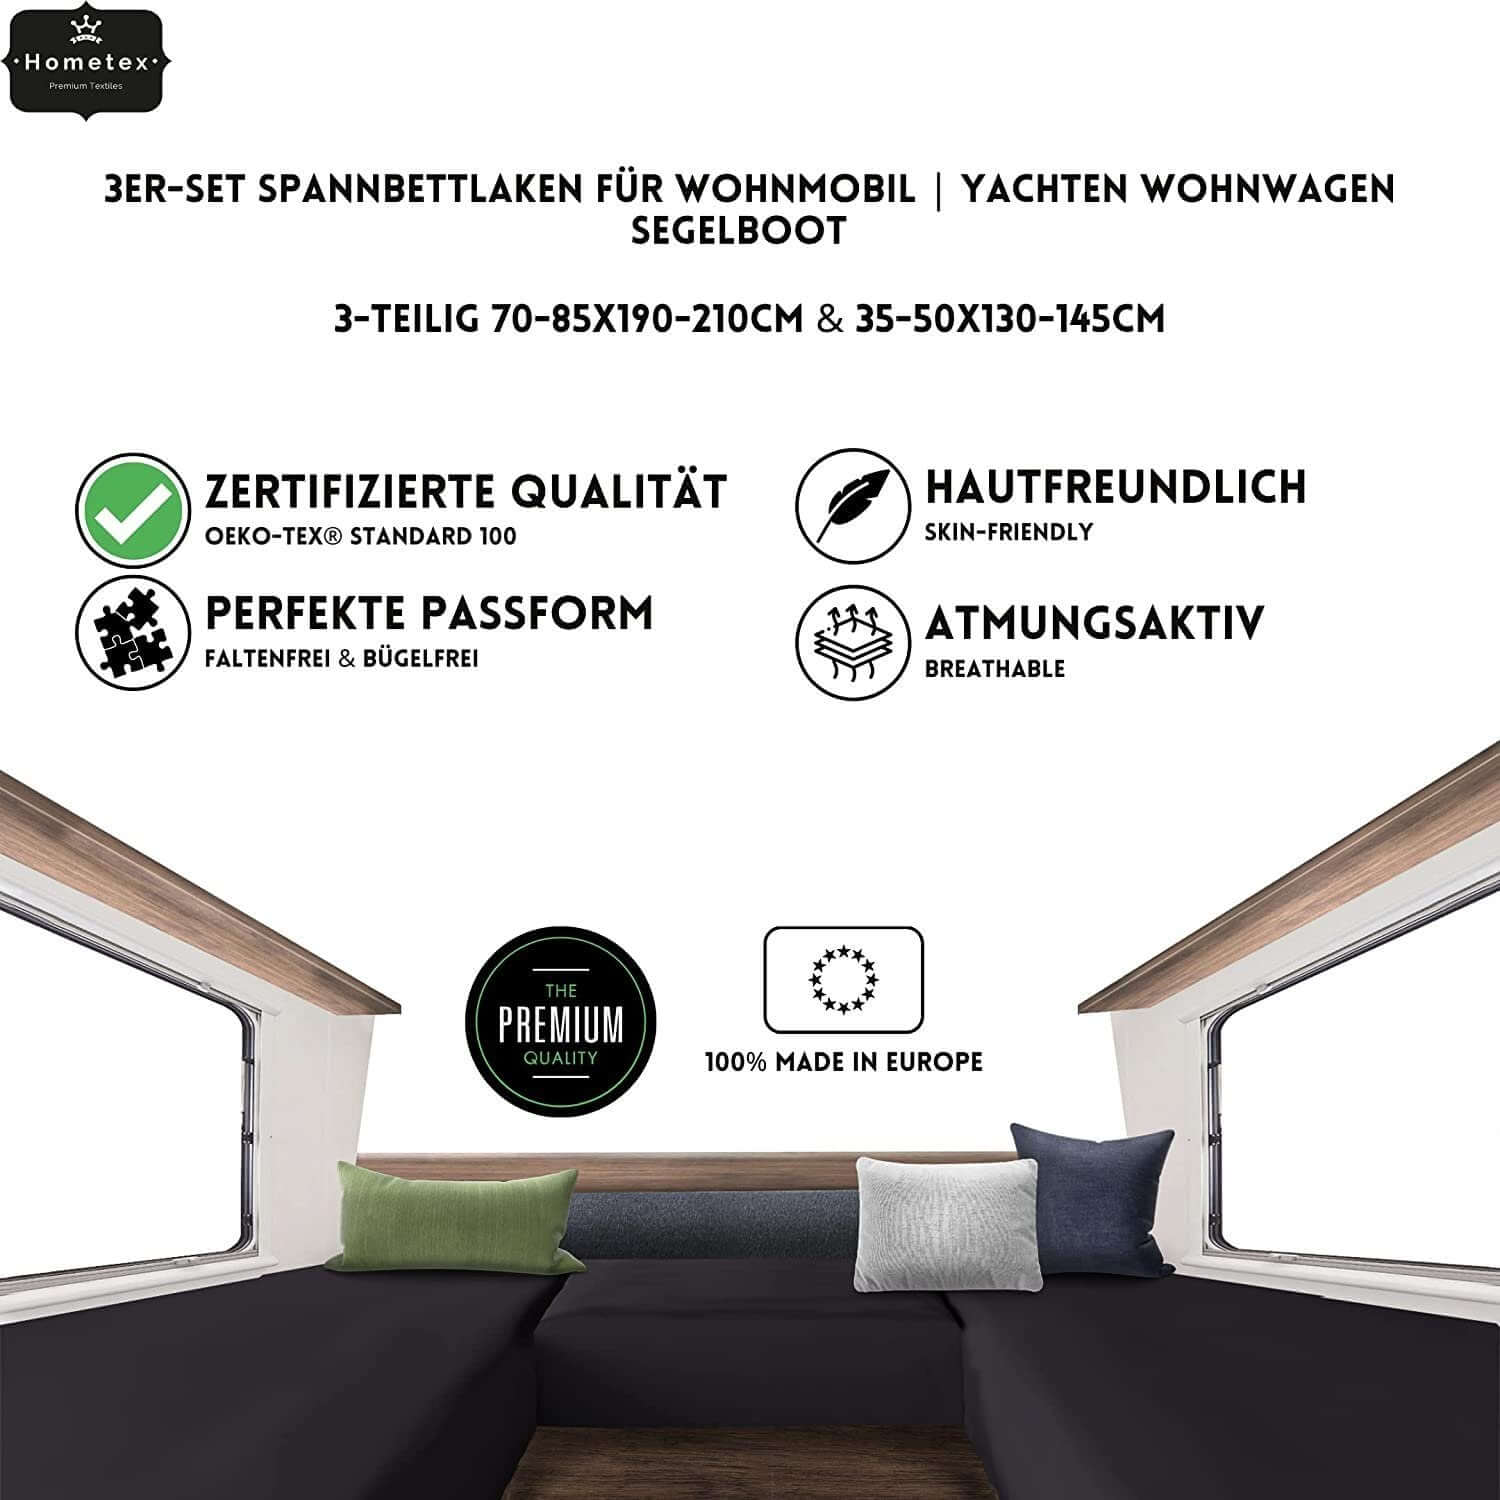 3er-Set Spannbettlaken für Wohnmobil , Yachten & Wohnwagen 70-85x190-210cm & 35-50x130-145cm